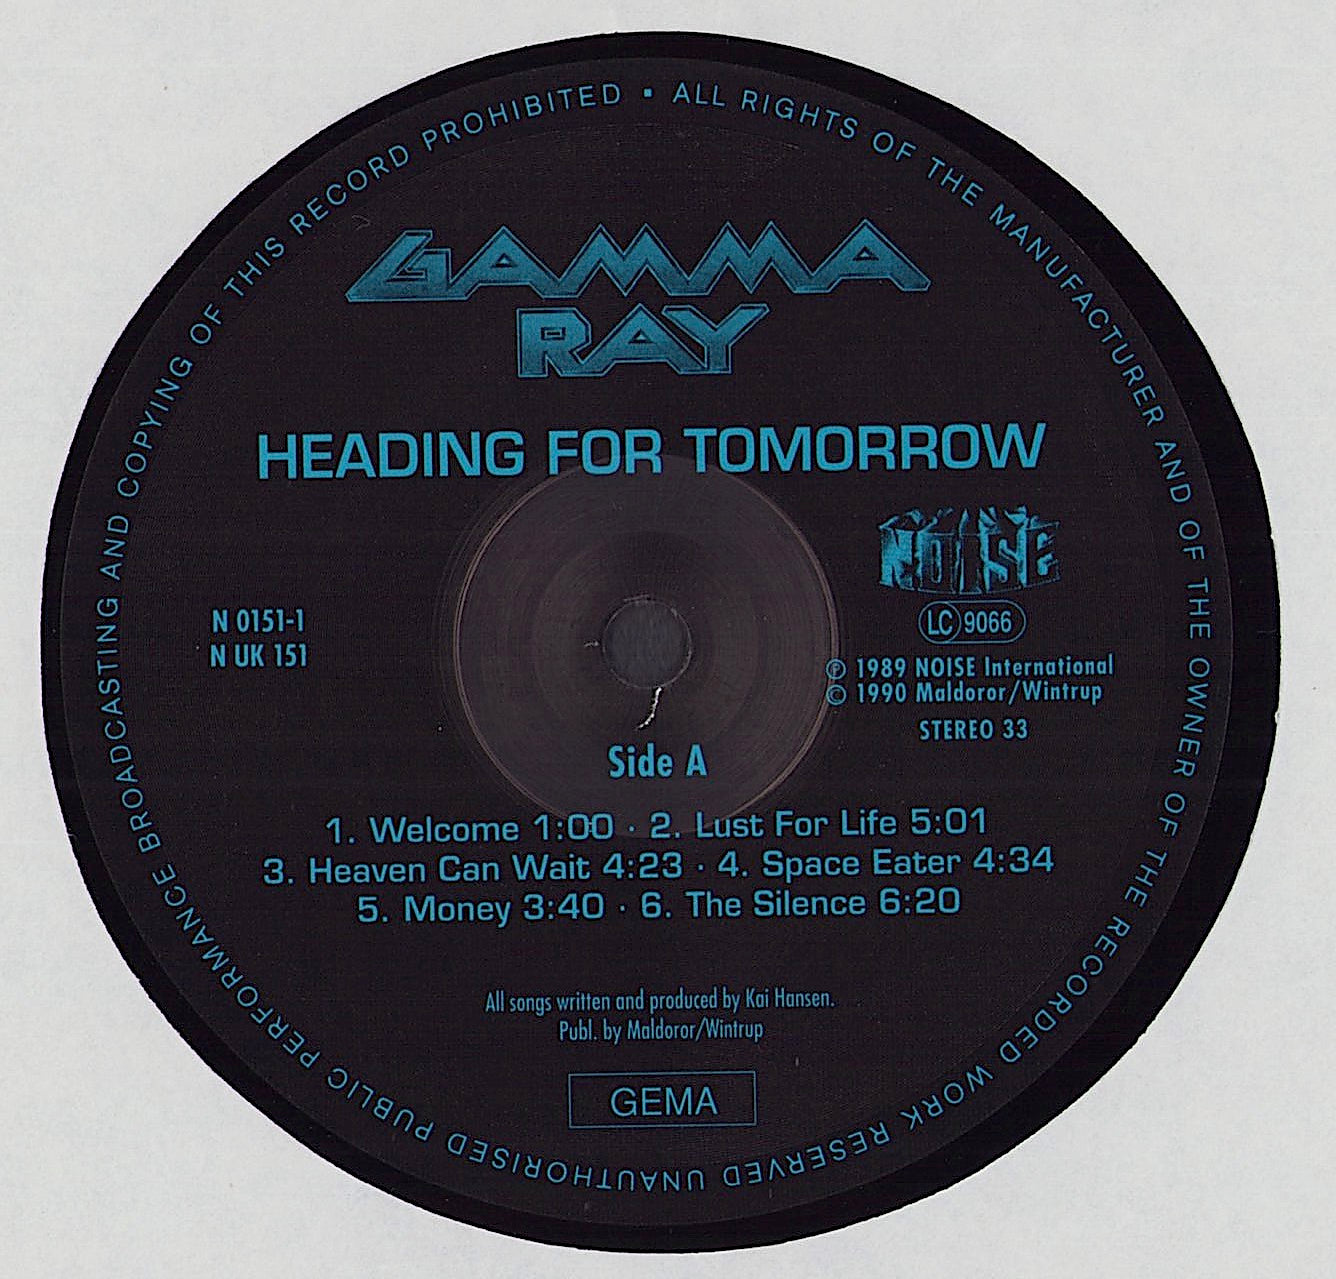 Gamma Ray ‎- Heading For Tomorrow Vinyl LP